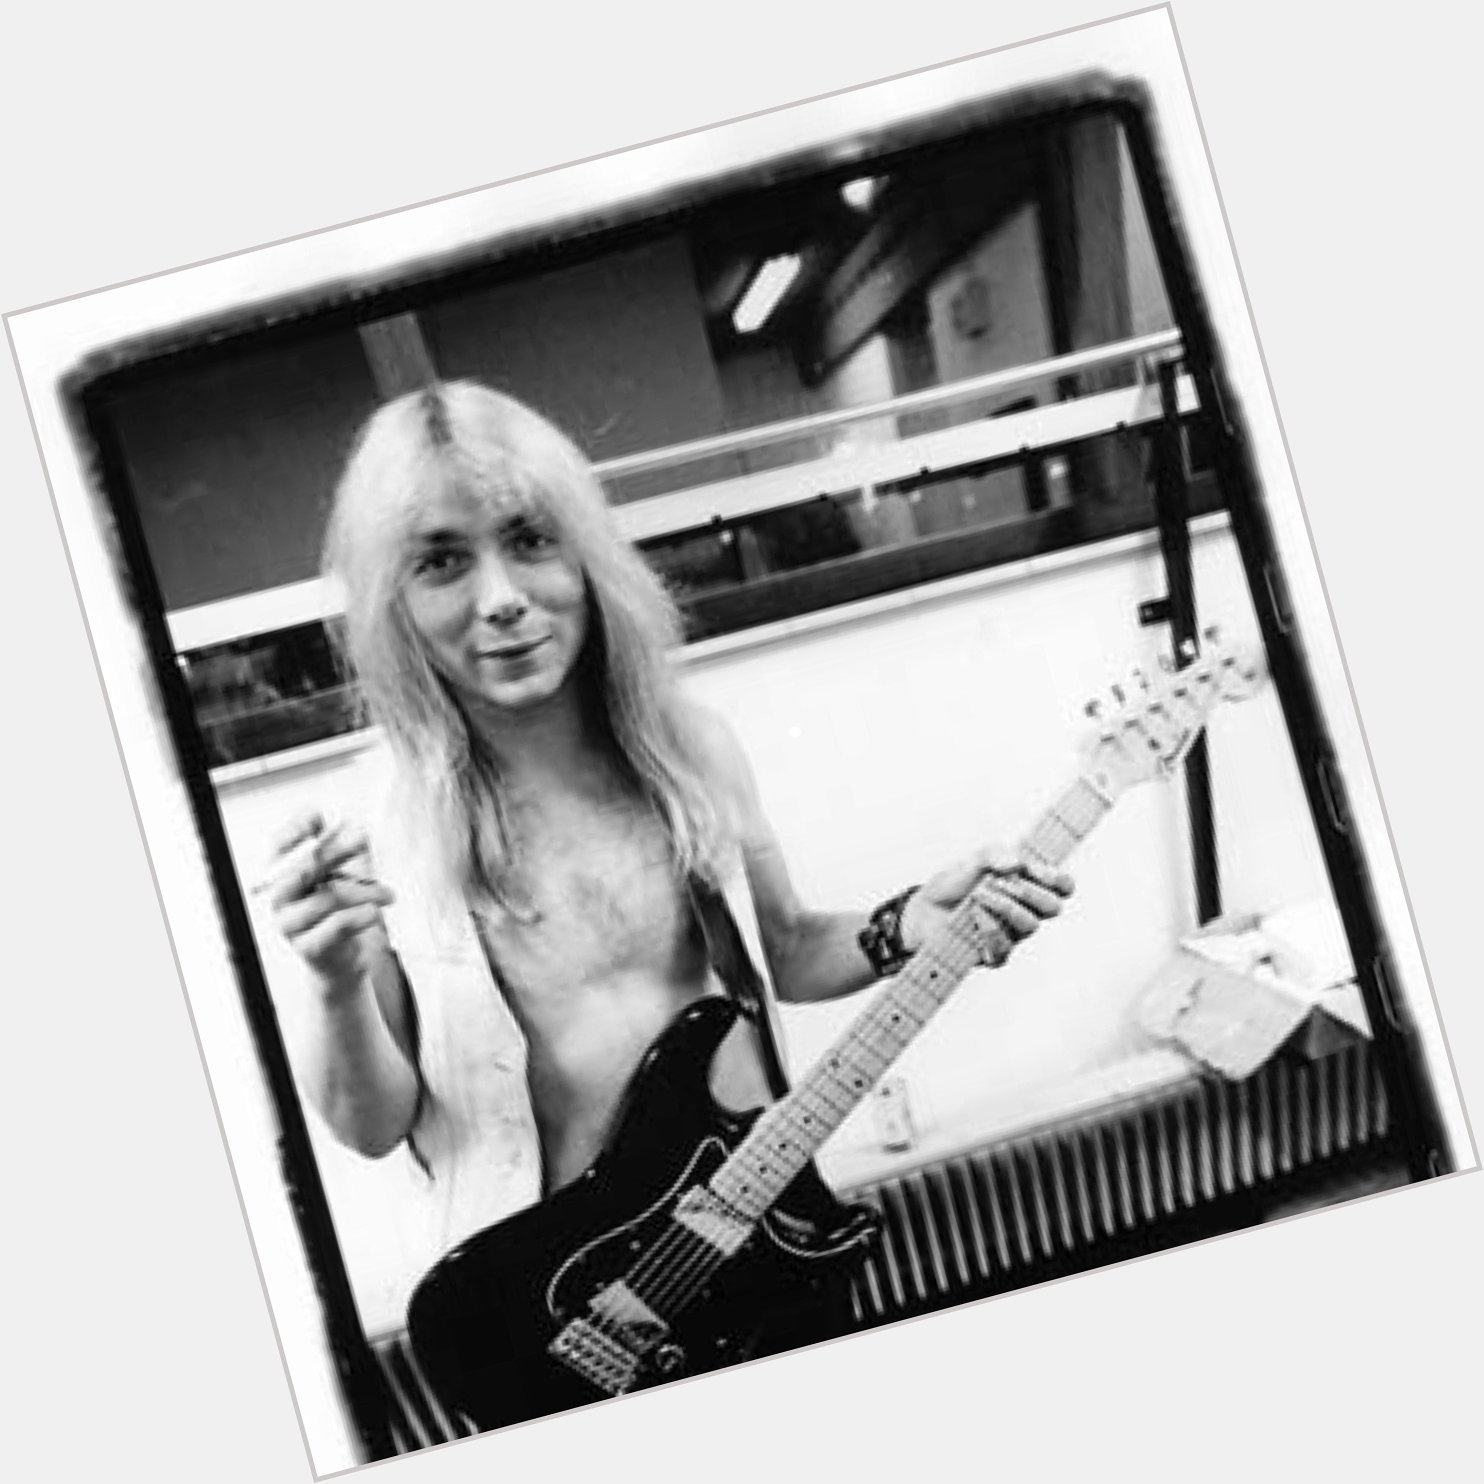 Happy Birthday to Iron Maiden guitarist, Dave Murray! 